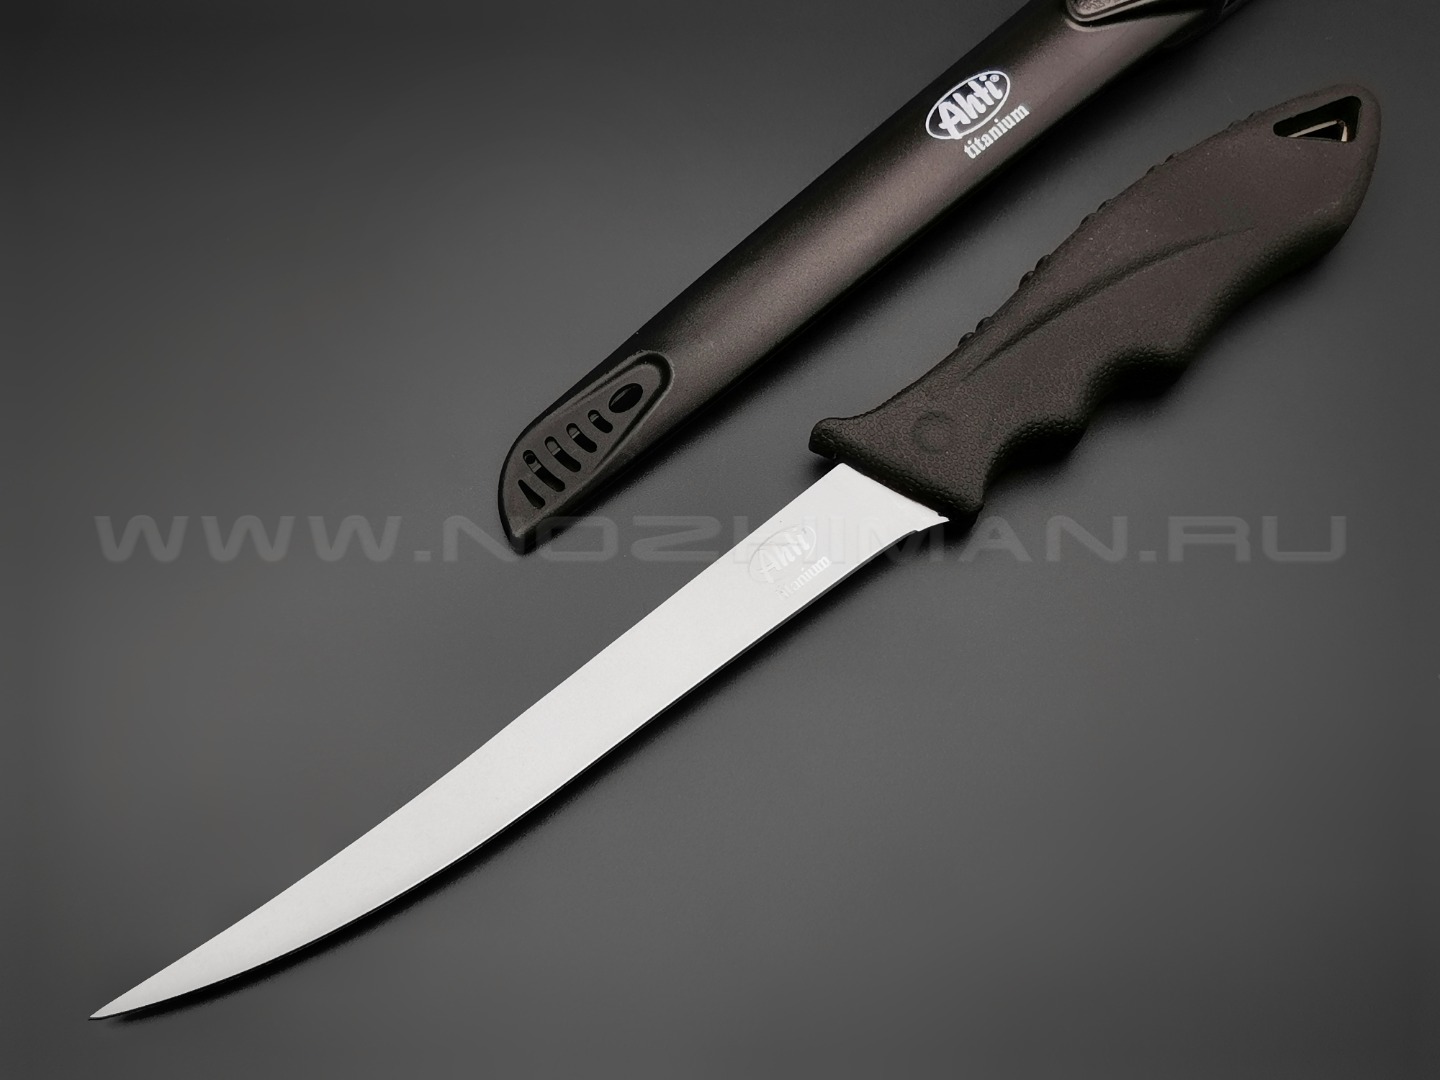 Филейный нож Ahti 170 Titanium 9666A нержавеющая сталь, рукоять резина